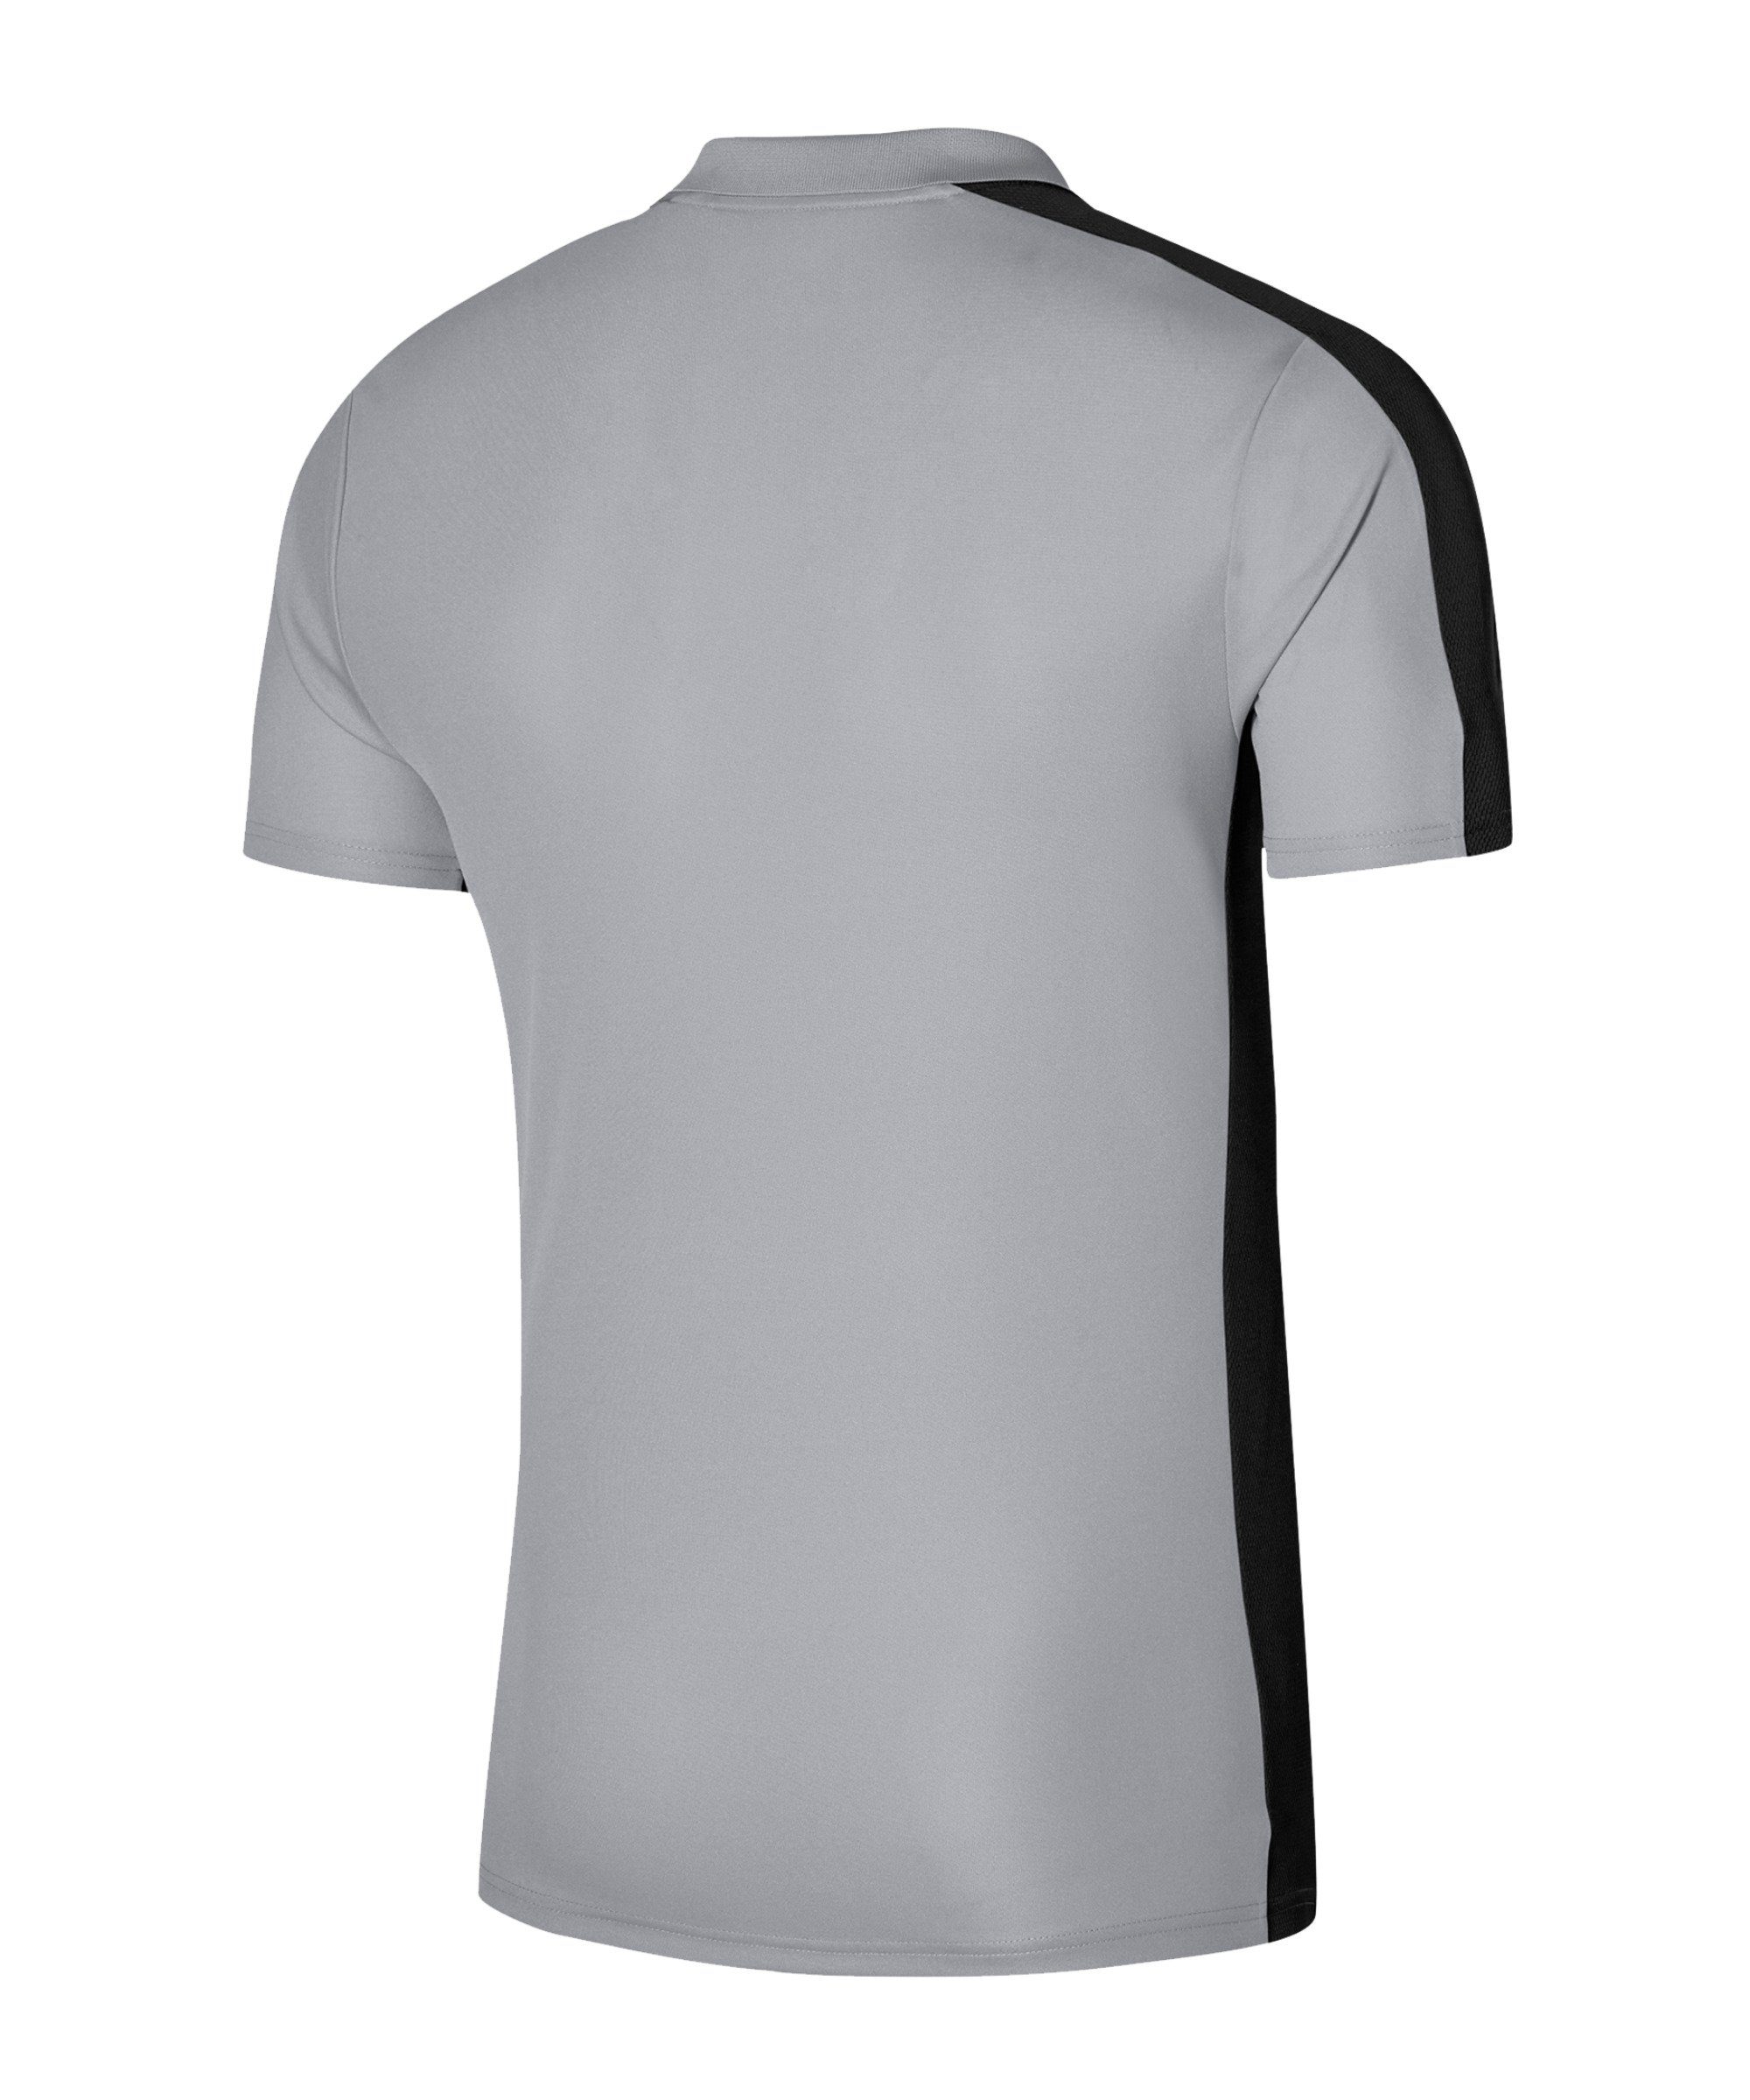 Academy Nike T-Shirt grauschwarz Poloshirt default 23